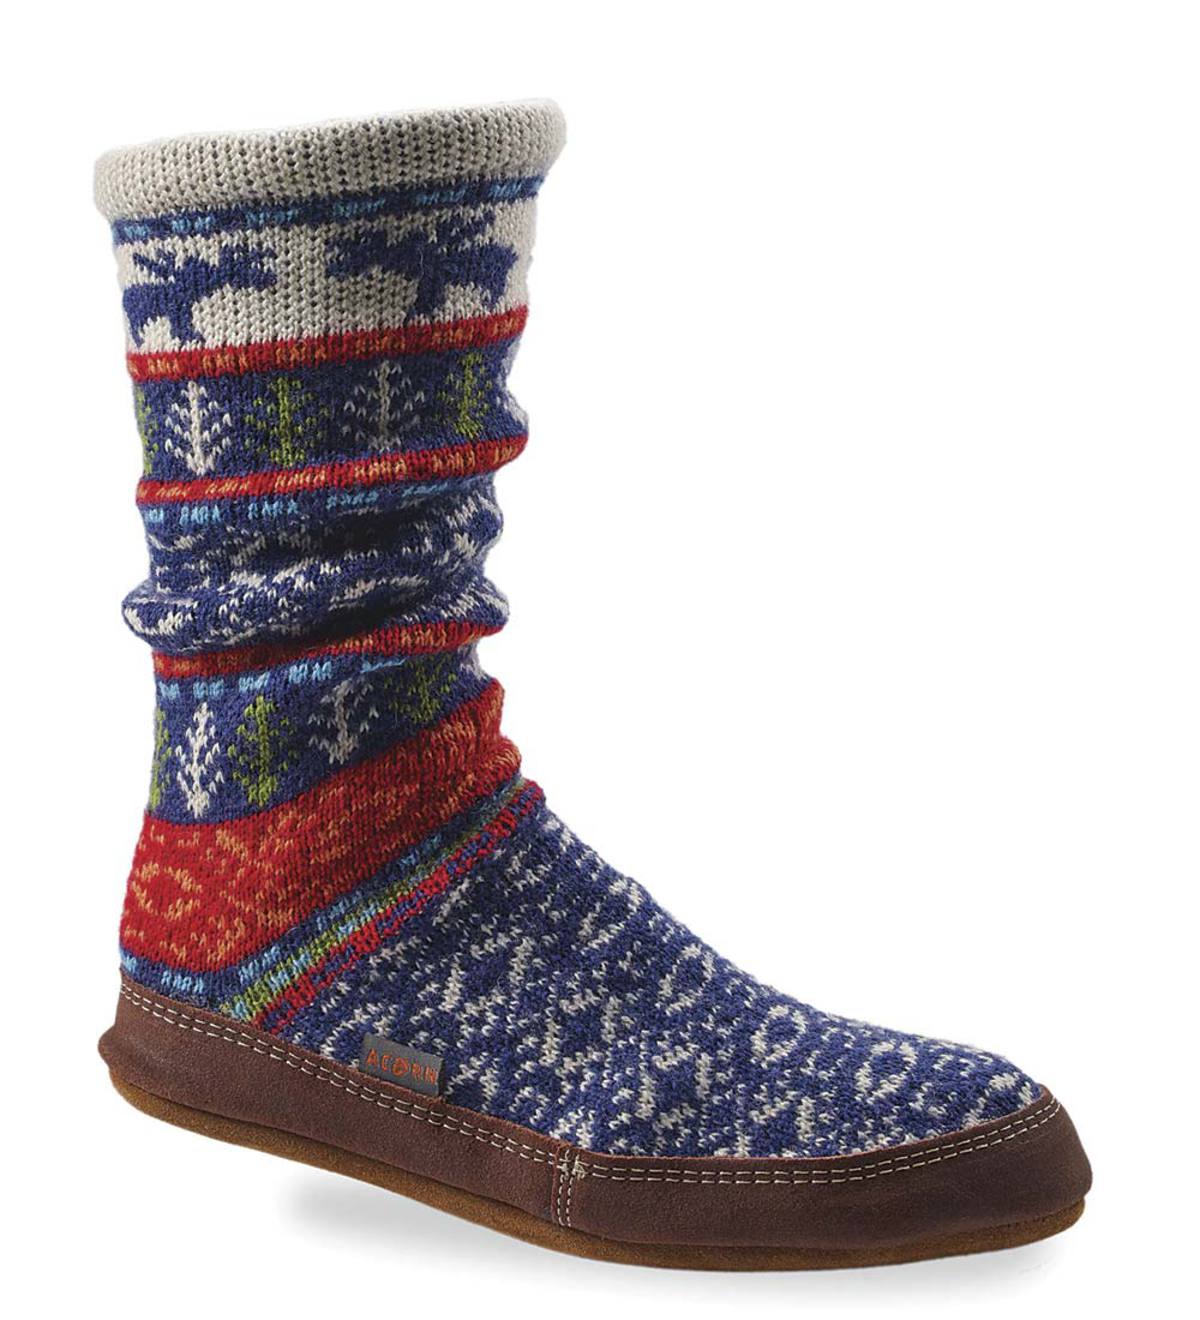 Acorn Slipper Socks in Maine Jacquard